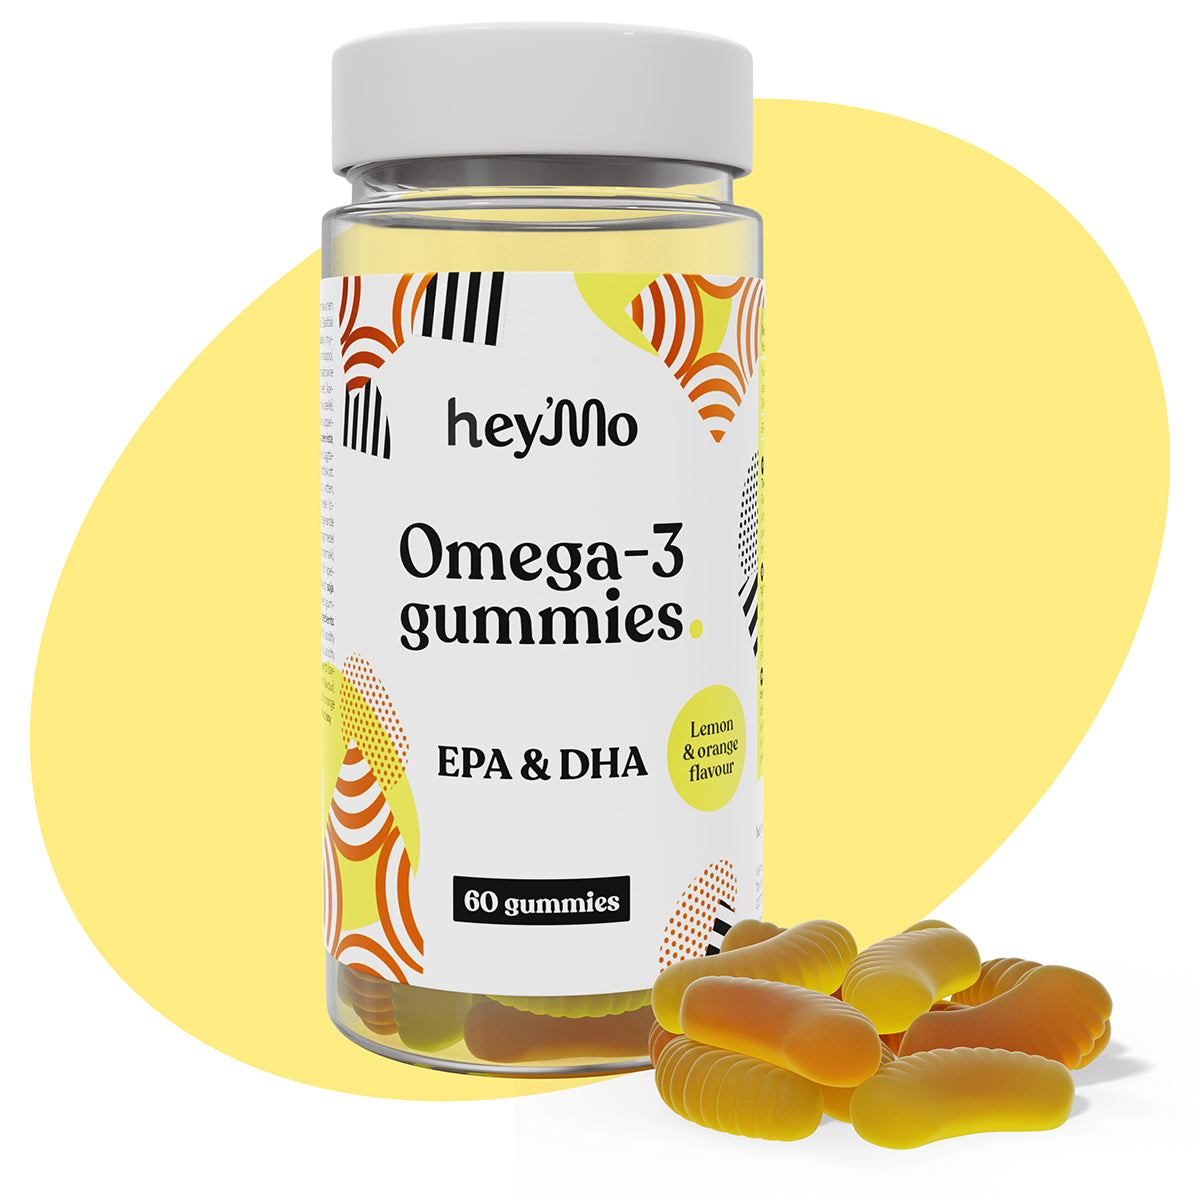 Omega-3 gummies